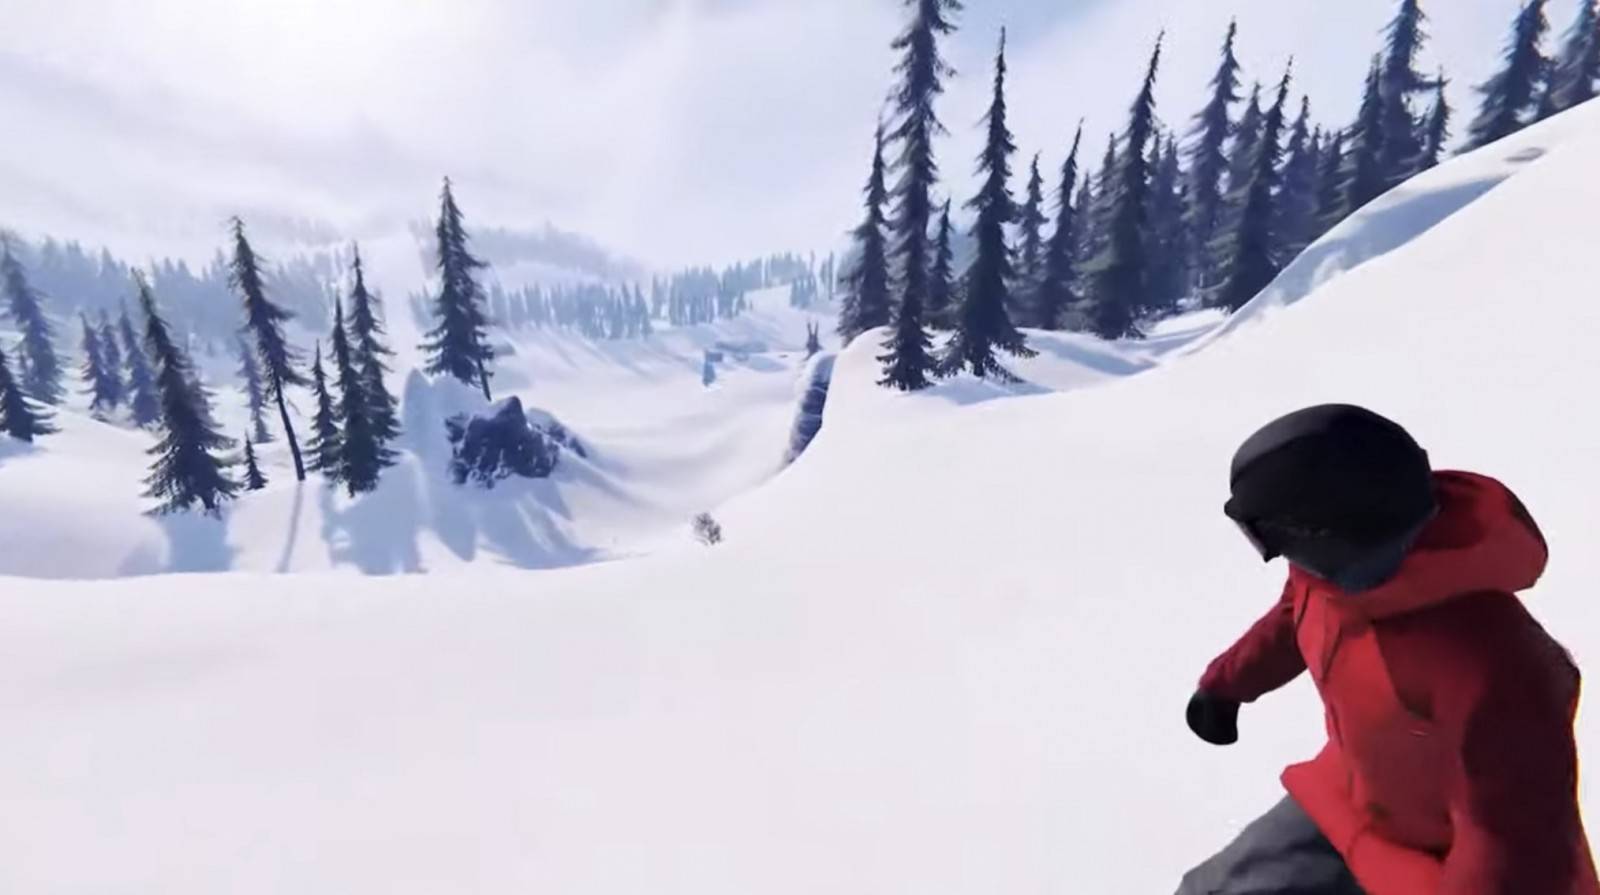 E3 2021: Anuncian Shredders, un nuevo juego de Snowboarding 5